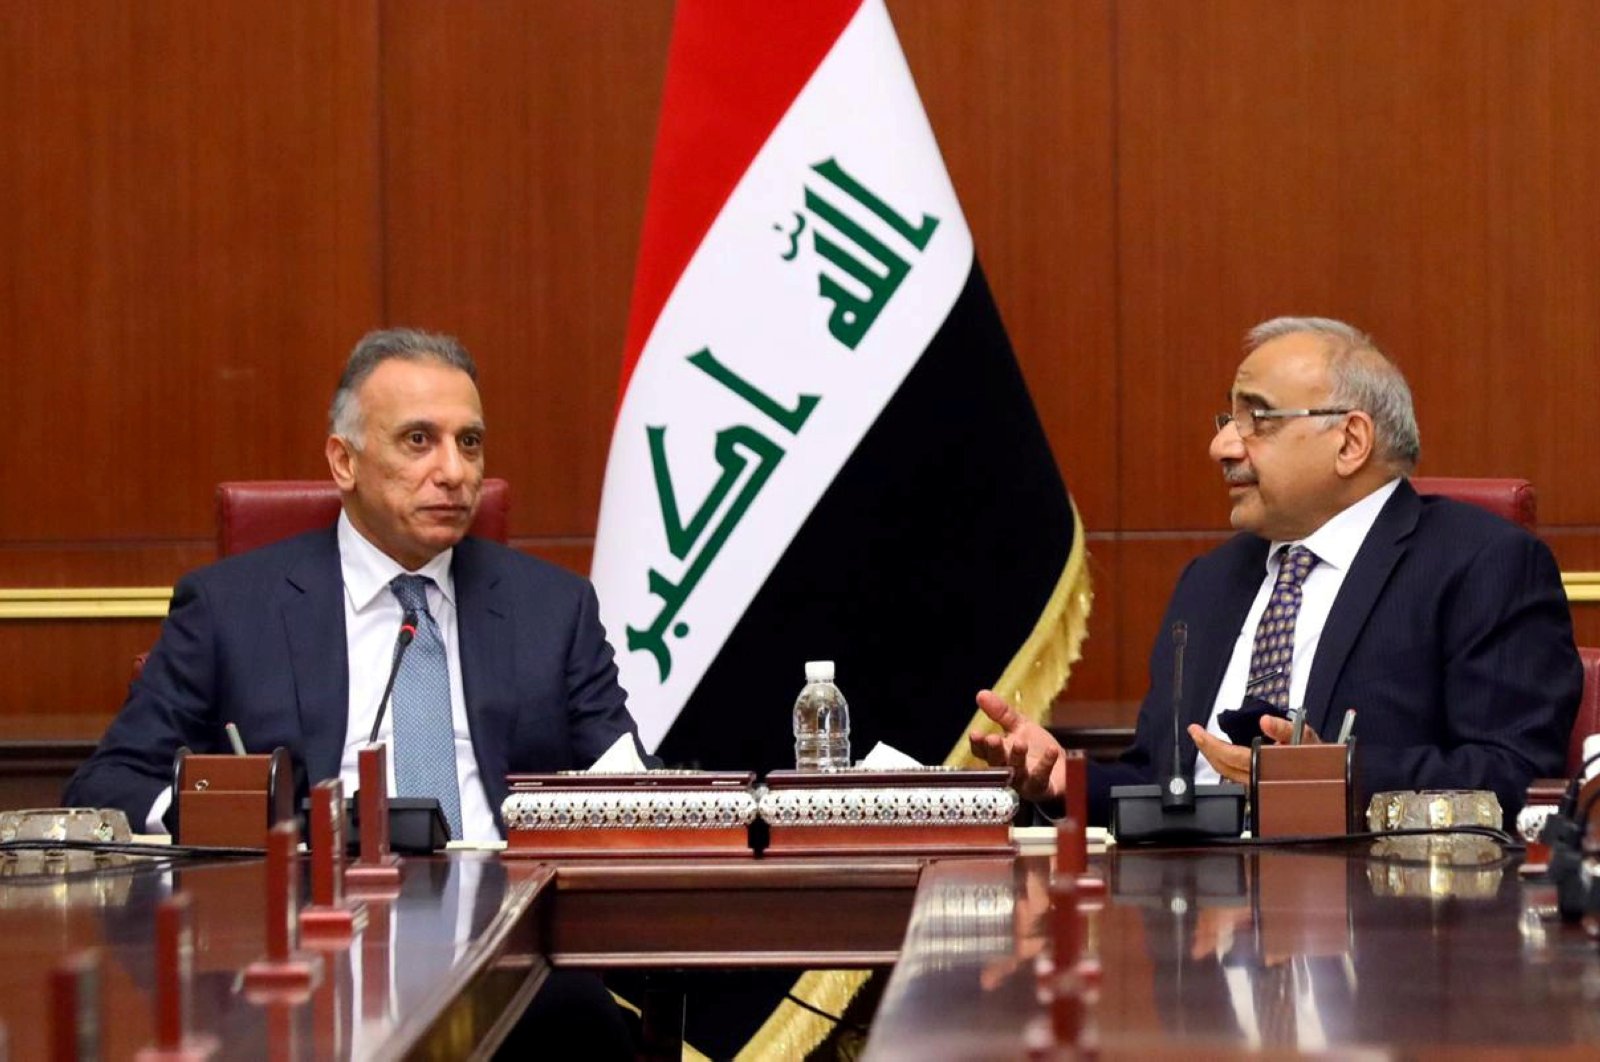 Iraq's new Prime Minister Mustafa al-Kadhimi meets with former Iraqi Prime Minister Adil Abdul-Mahdi in Baghdad, Iraq, May 7, 2020. (Reuters Photo)